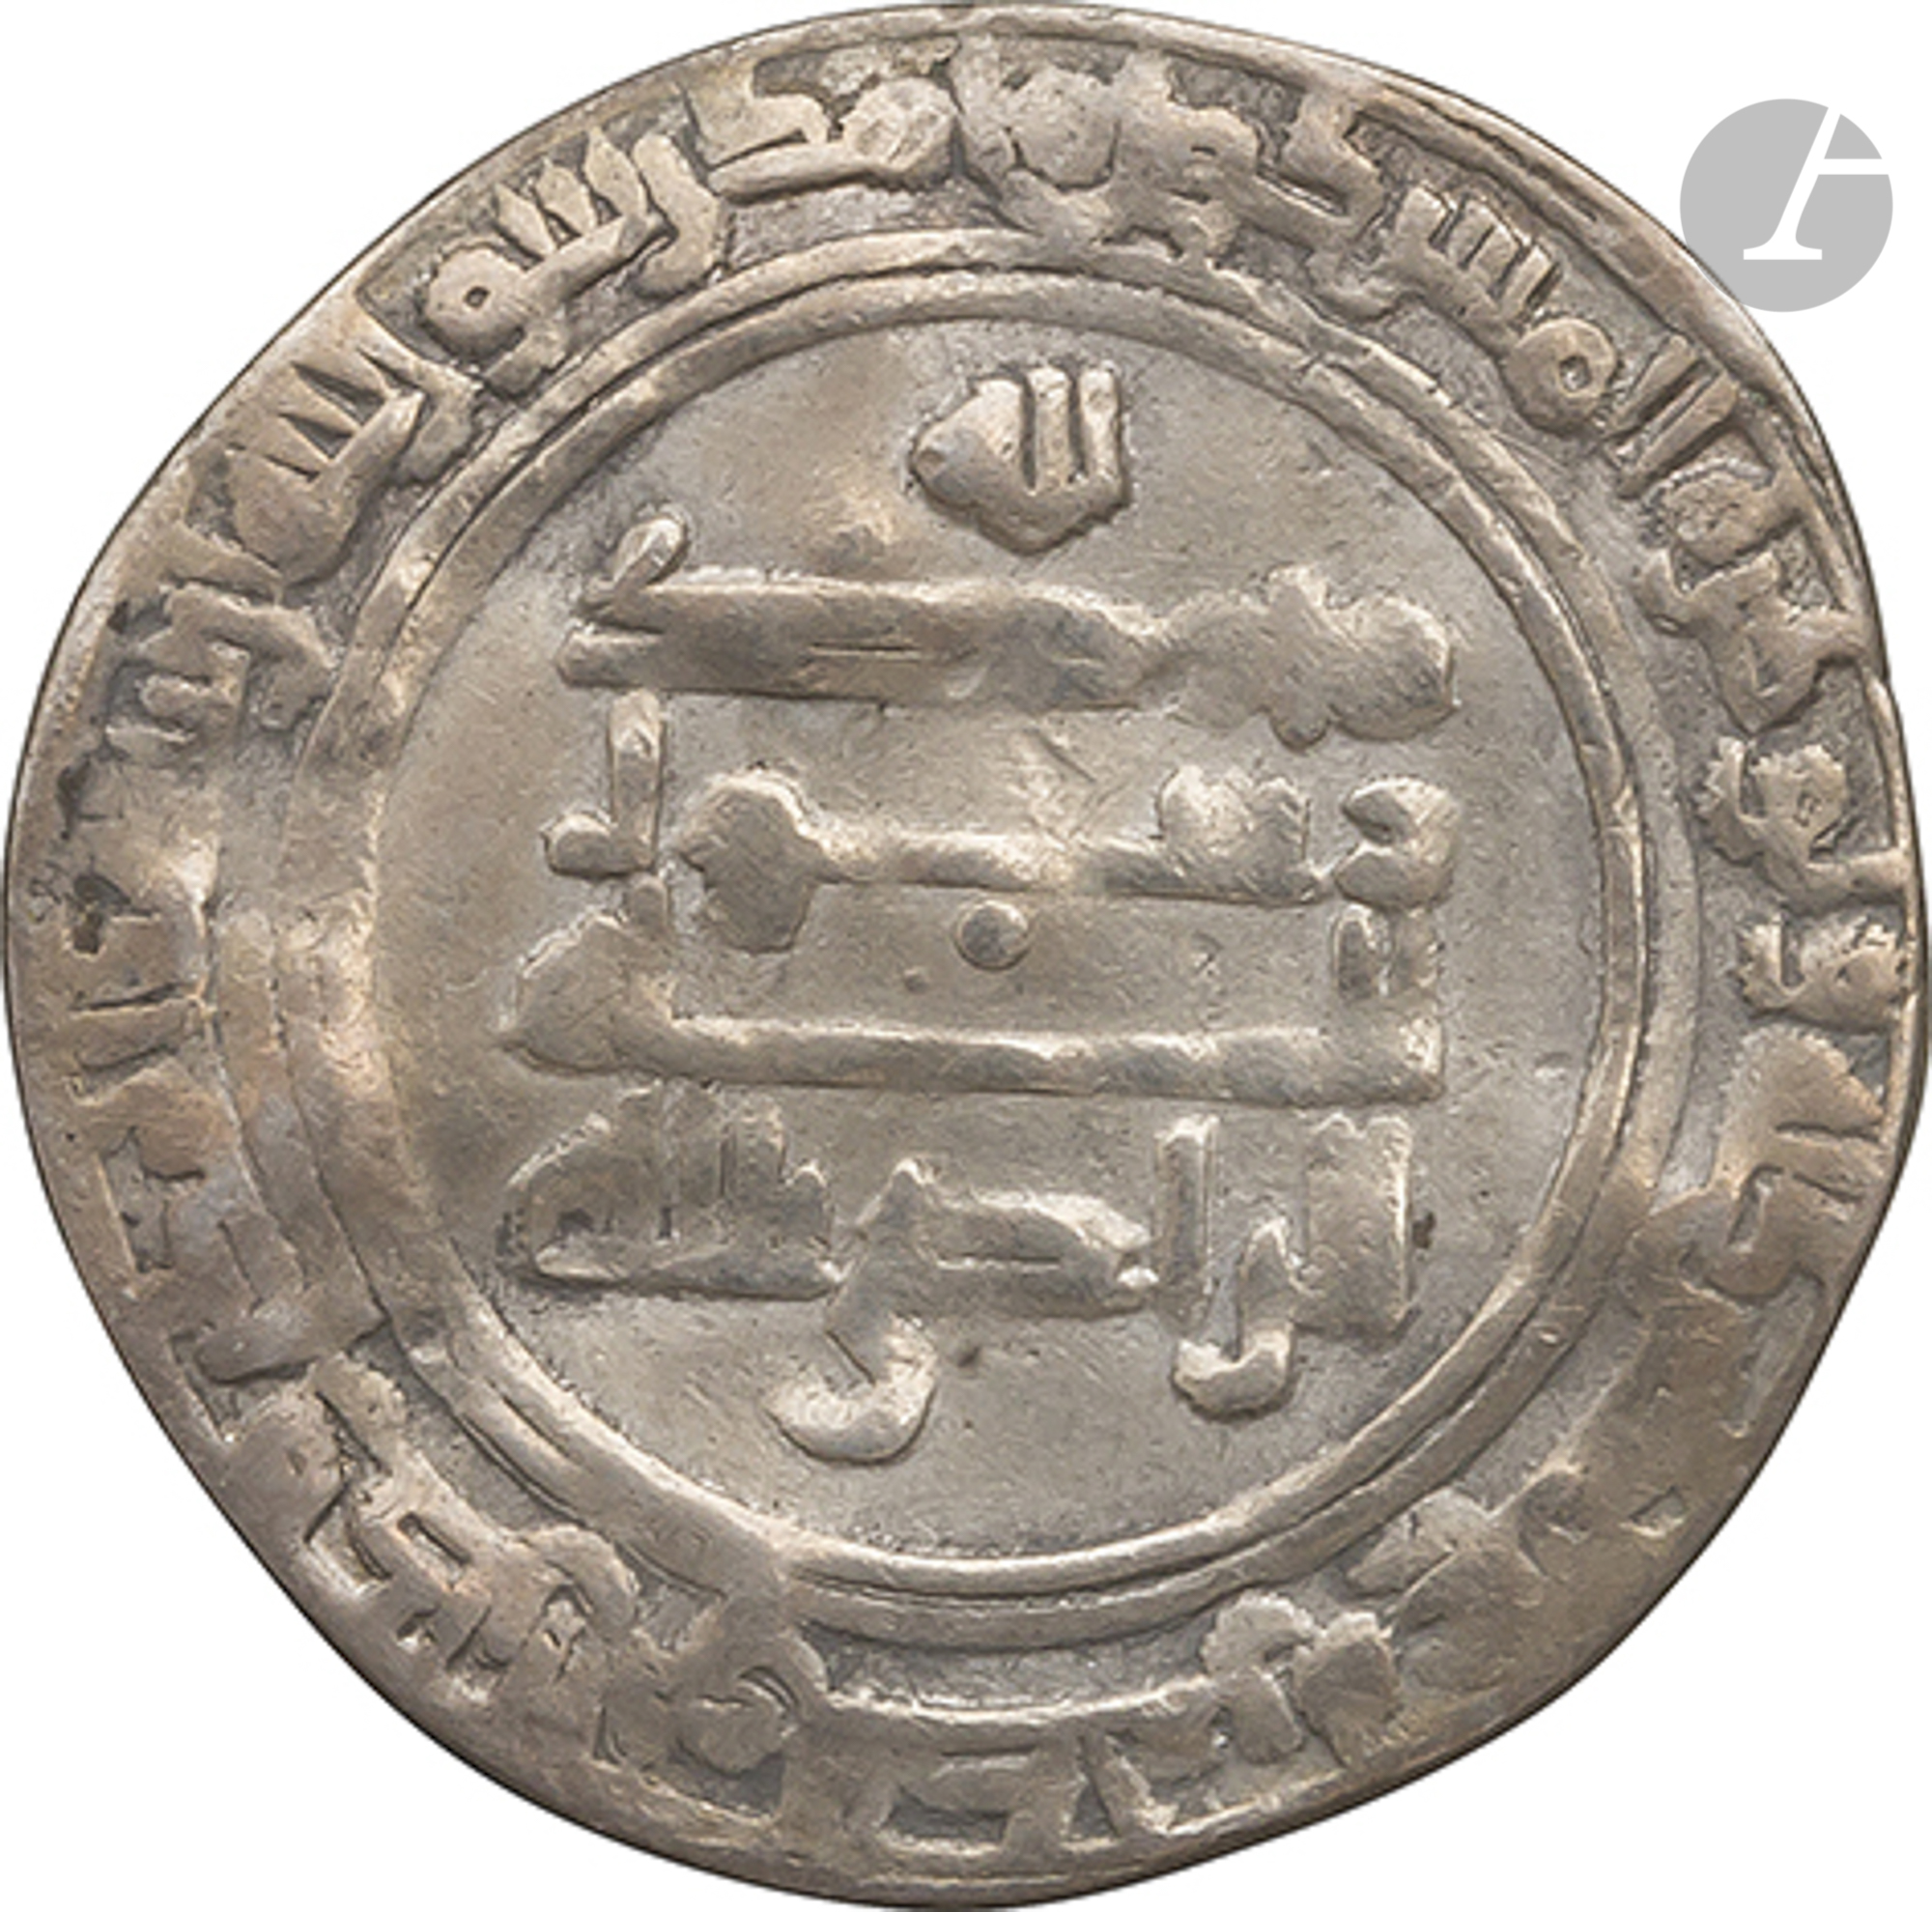 ABBASSIDES Dinar d'or daté 183 H / 799, au nom de Ja'far, gouverneur d'Égypte, Règne de Harûn al- - Image 6 of 14